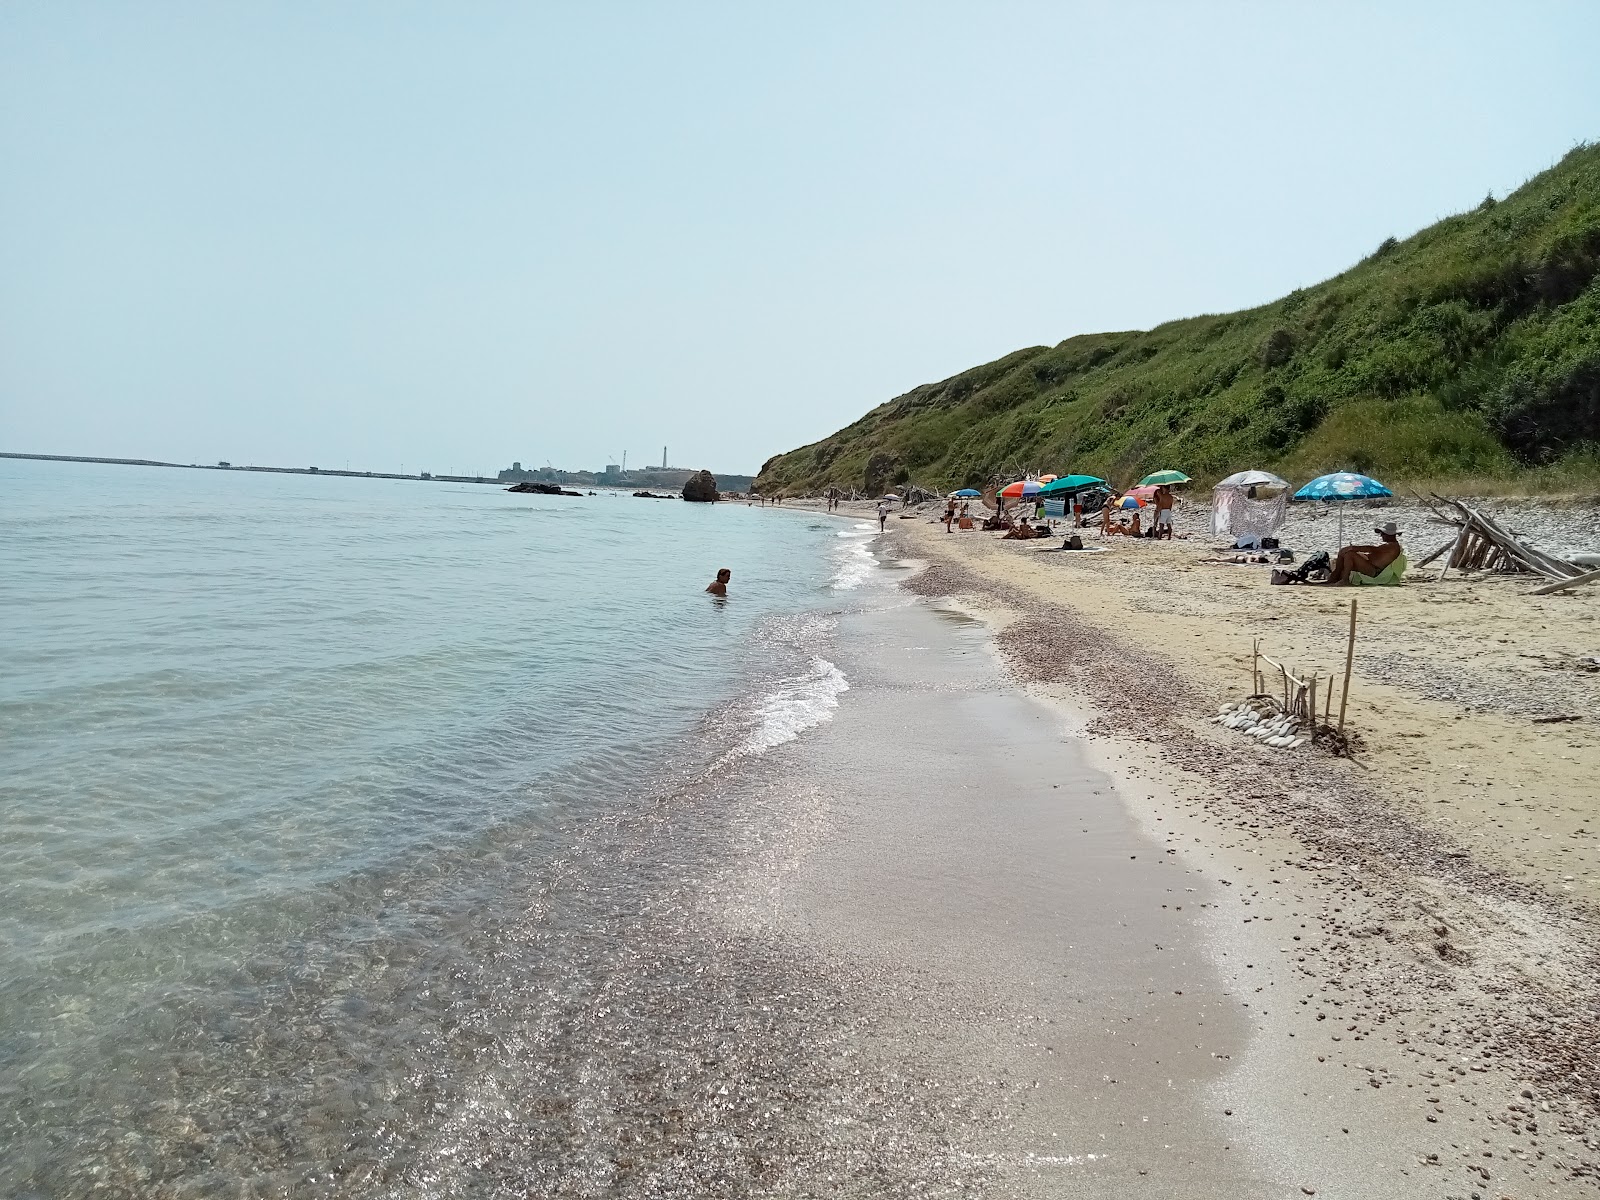 Photo of Spiaggia dei Libertini located in natural area